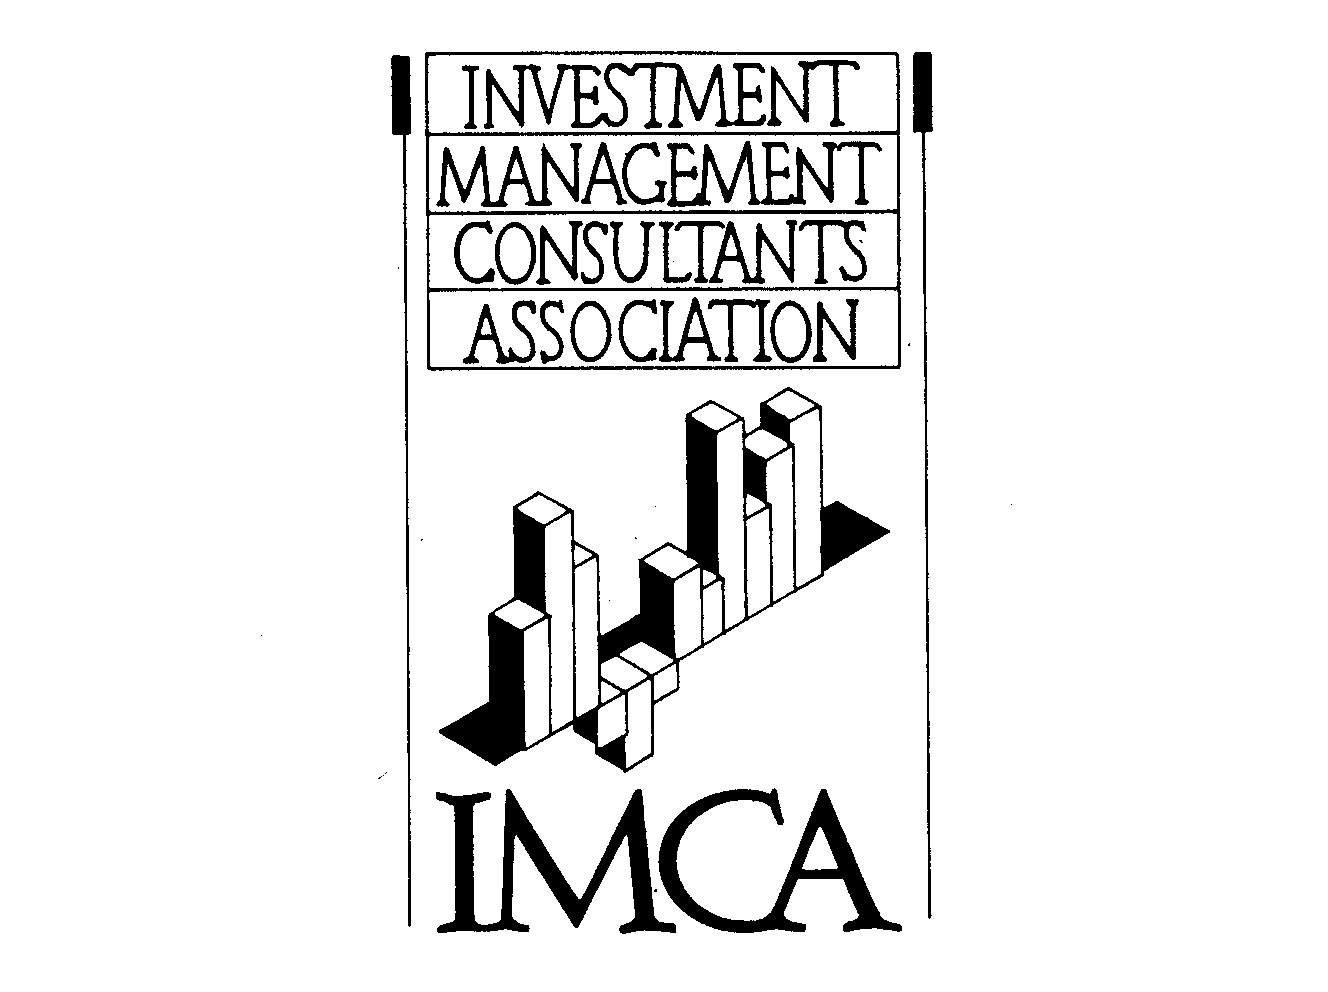  INVESTMENT MANAGEMENT CONSULTANTS ASSOCIATION IMCA